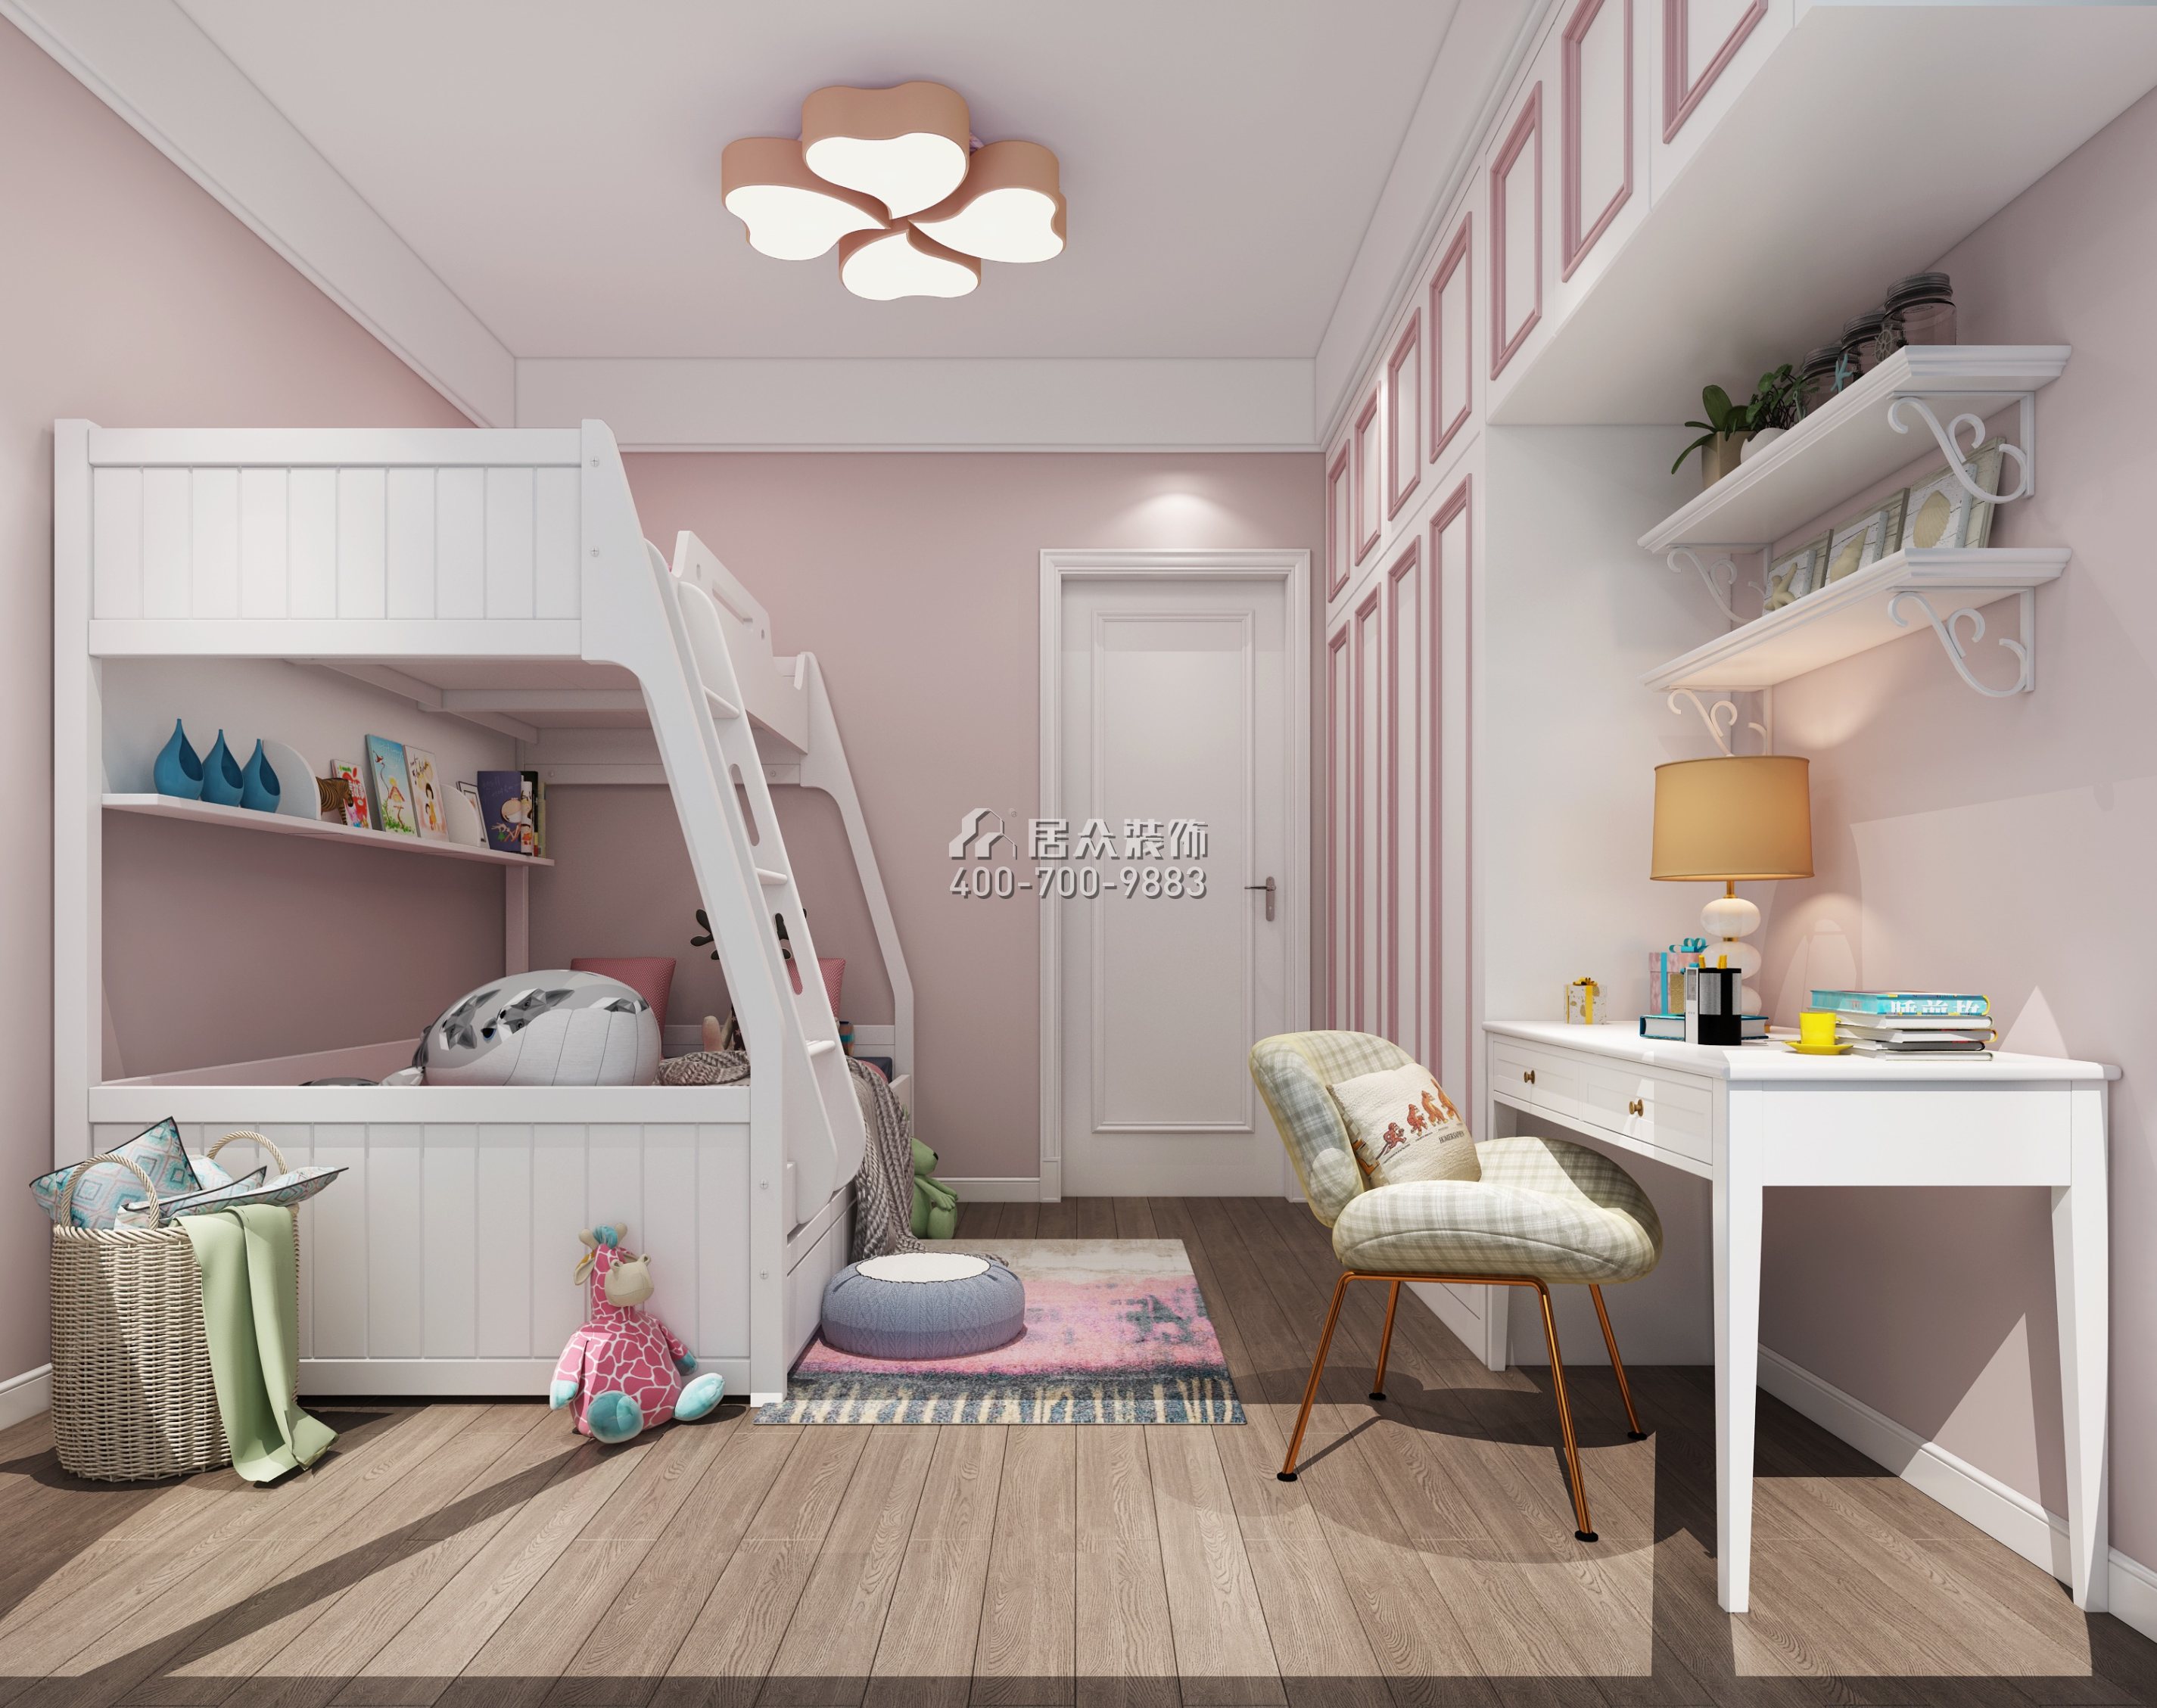 睿智华庭147平方米现代简约风格平层户型儿童房装修效果图